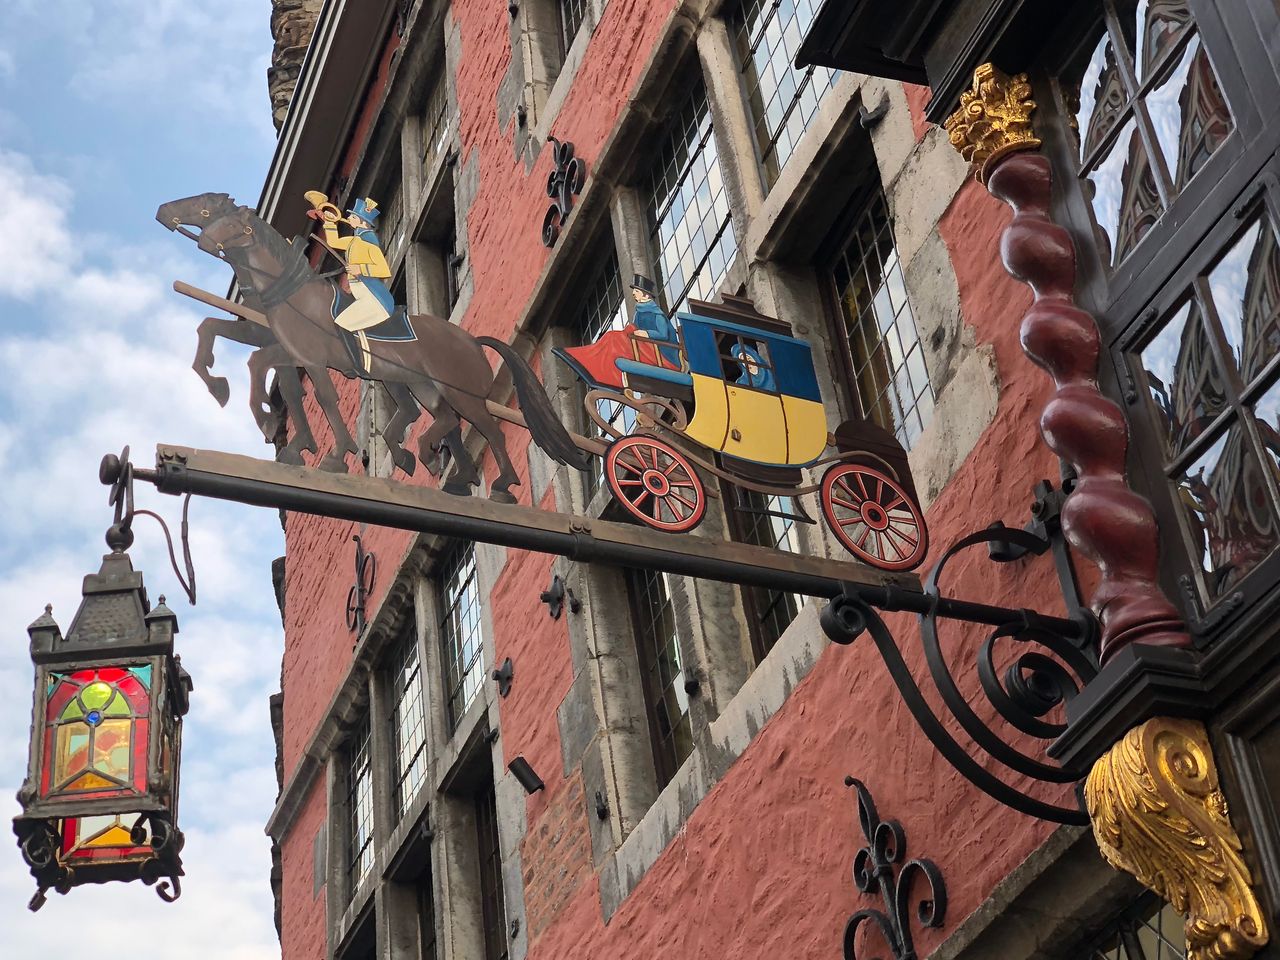 Der Postwagen (früher Postkutsche) ist das einzige erhaltene Holzhaus in Aachen. Die Geschichte reicht bis 1657 zurück. Nach dem verheerenden Stadtbrand setzten die Aachener lieber auf Steinbauten.